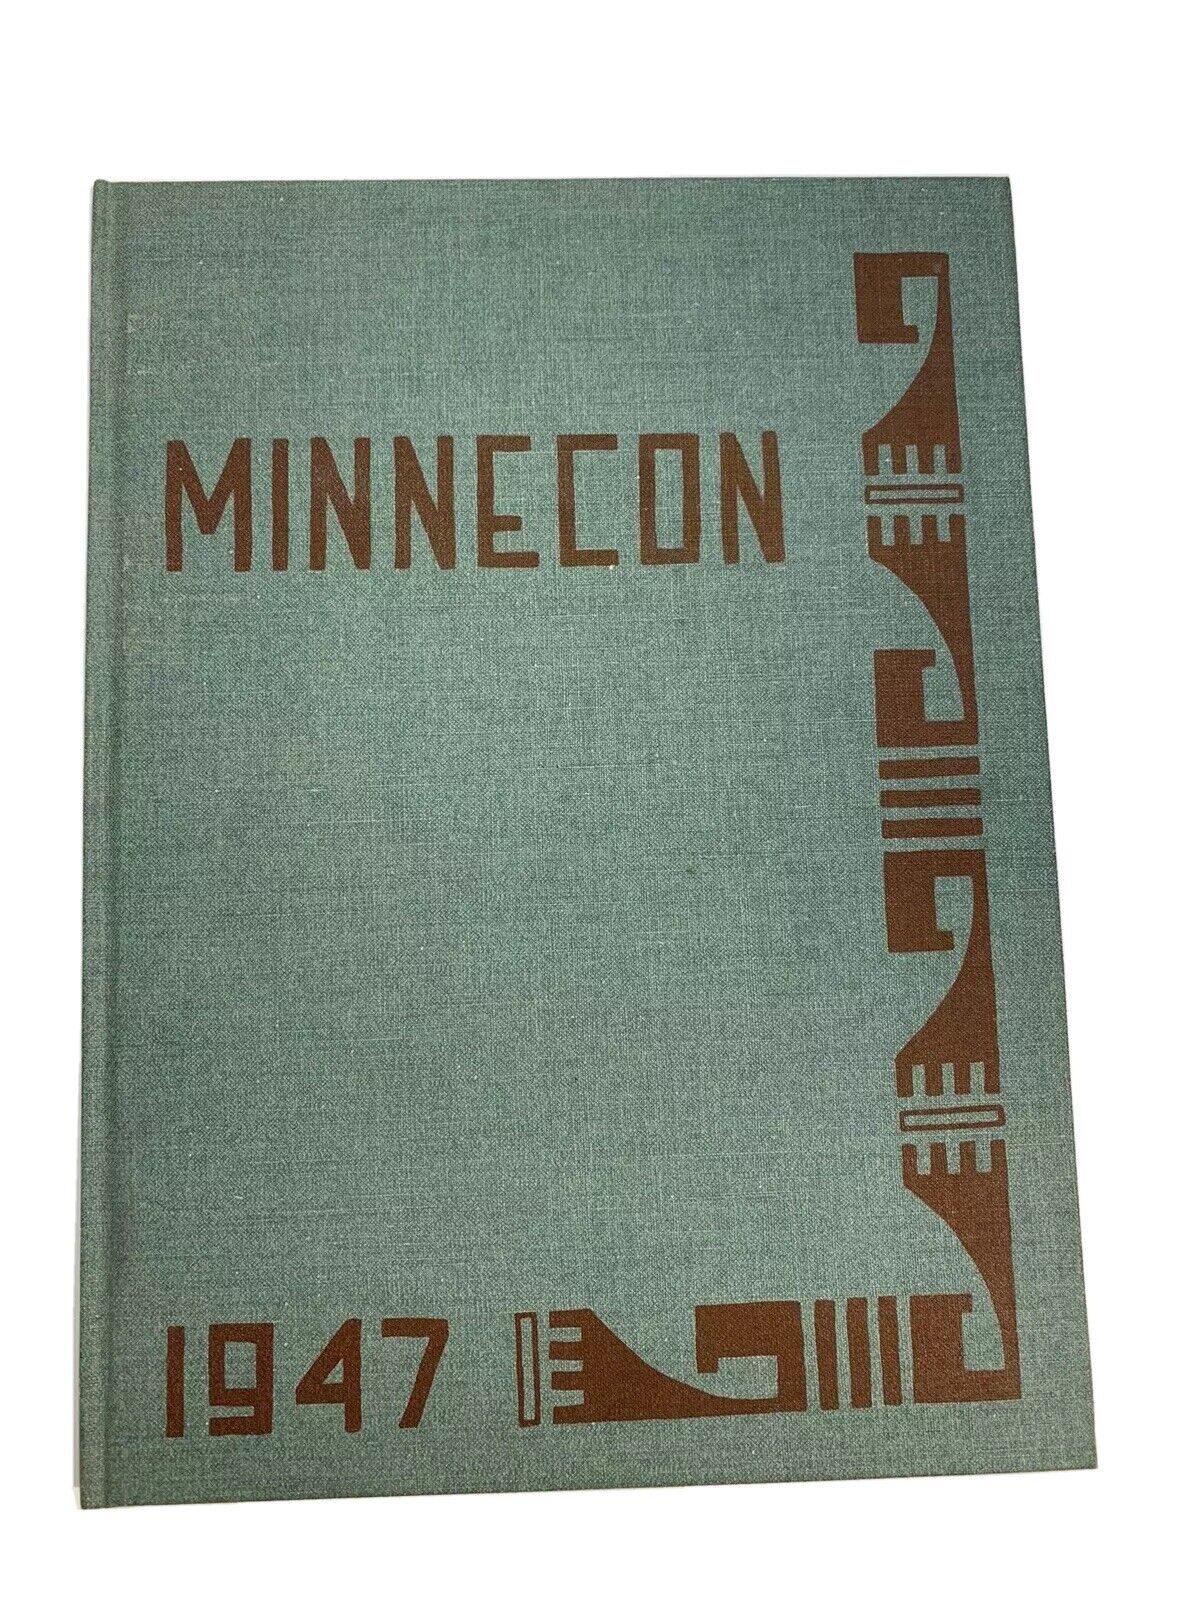 University Of Minnesota 1947 Minnecon Yearbook Home Economics